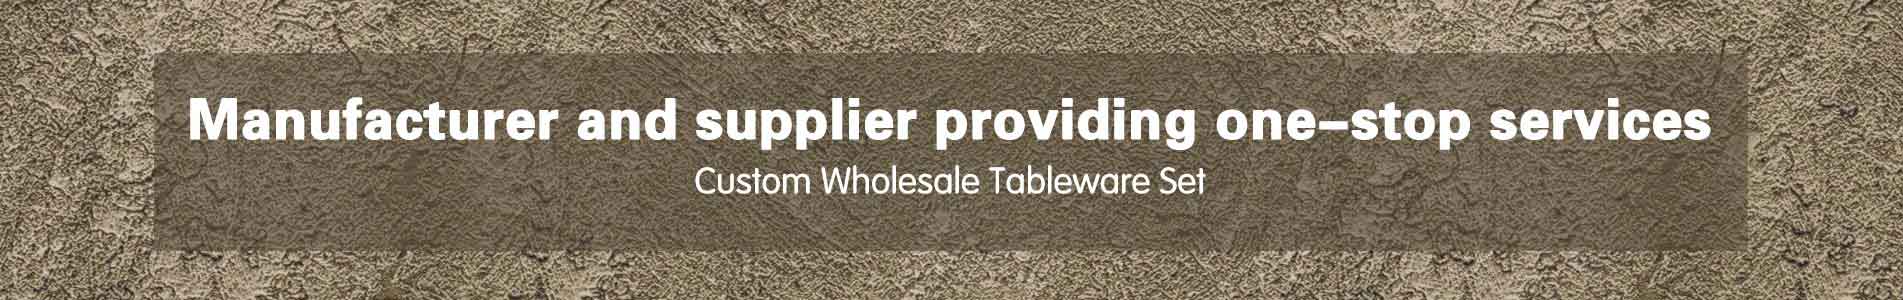 Custom Wholesale Tableware Set